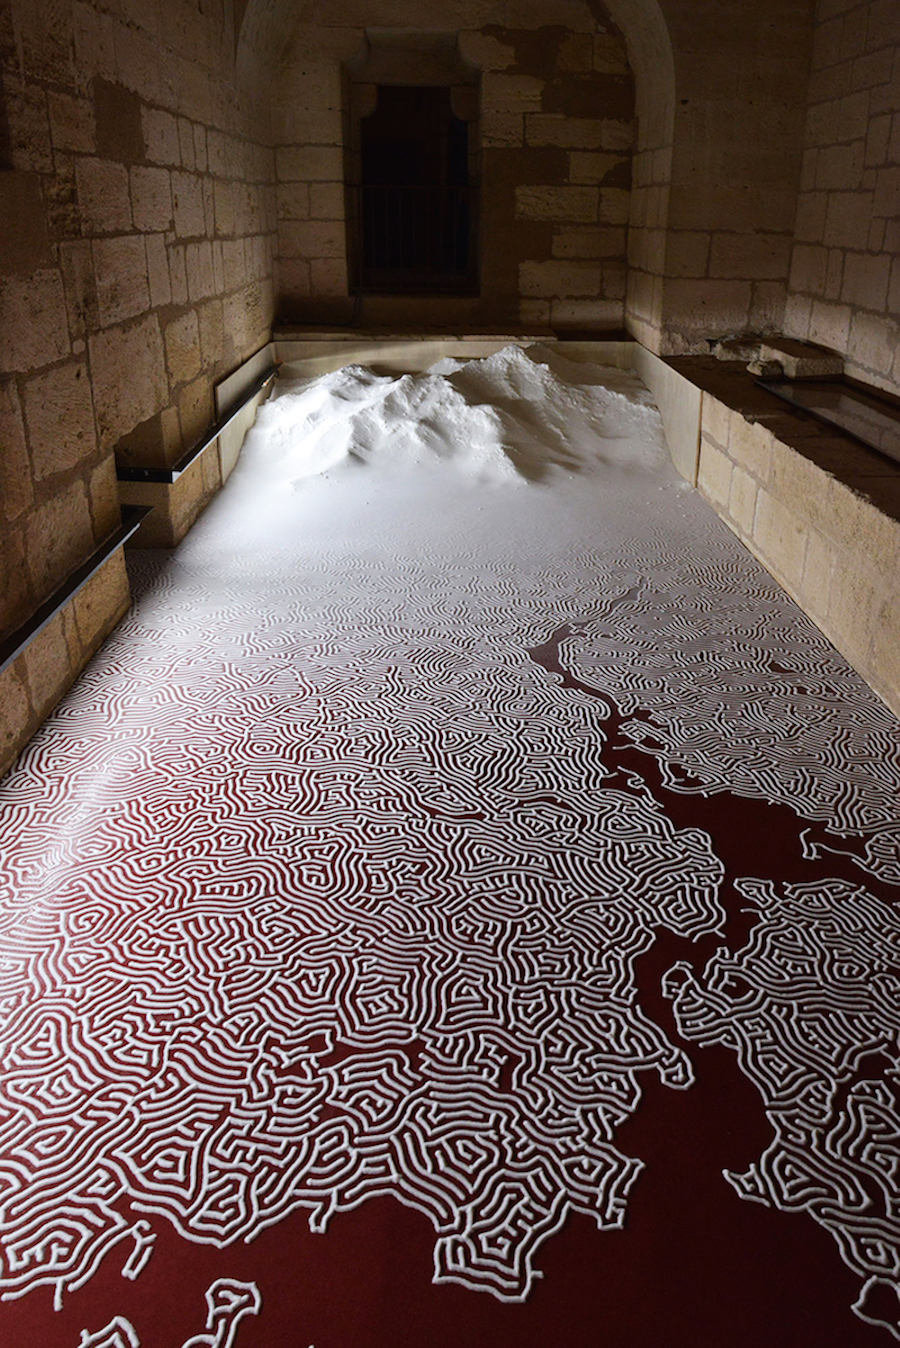 Meticulous Salt Labyrinth by Motoï Yamamoto7